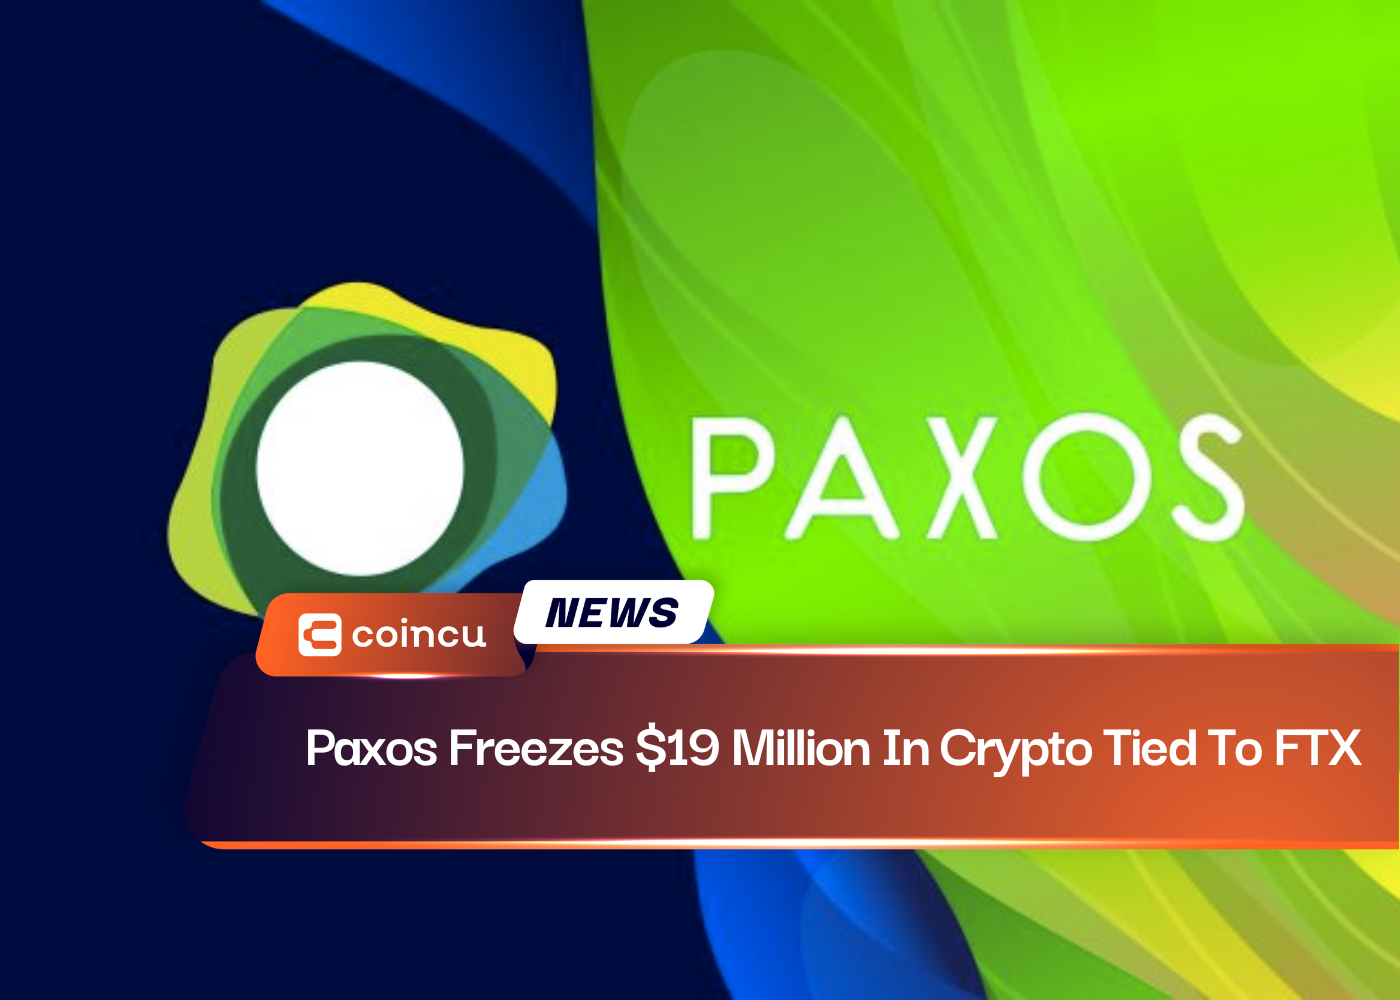 Paxos friert an FTX gebundene Kryptowährungen im Wert von 19 Millionen US-Dollar ein